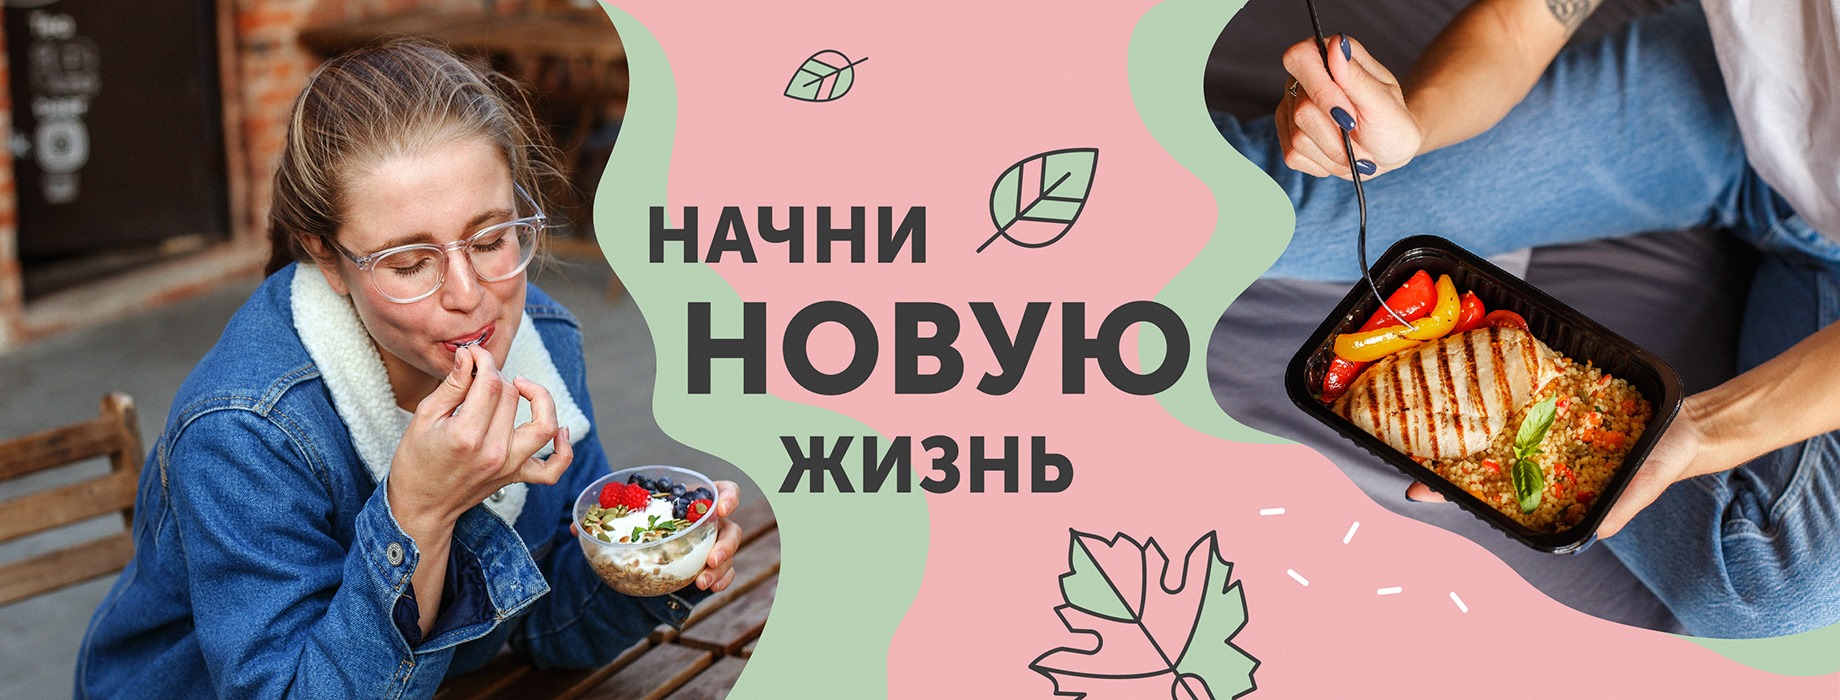 Закрытая акция выходного дня в Grow Food! Всего 50 коробок еды со скидкой 5000 рублей!